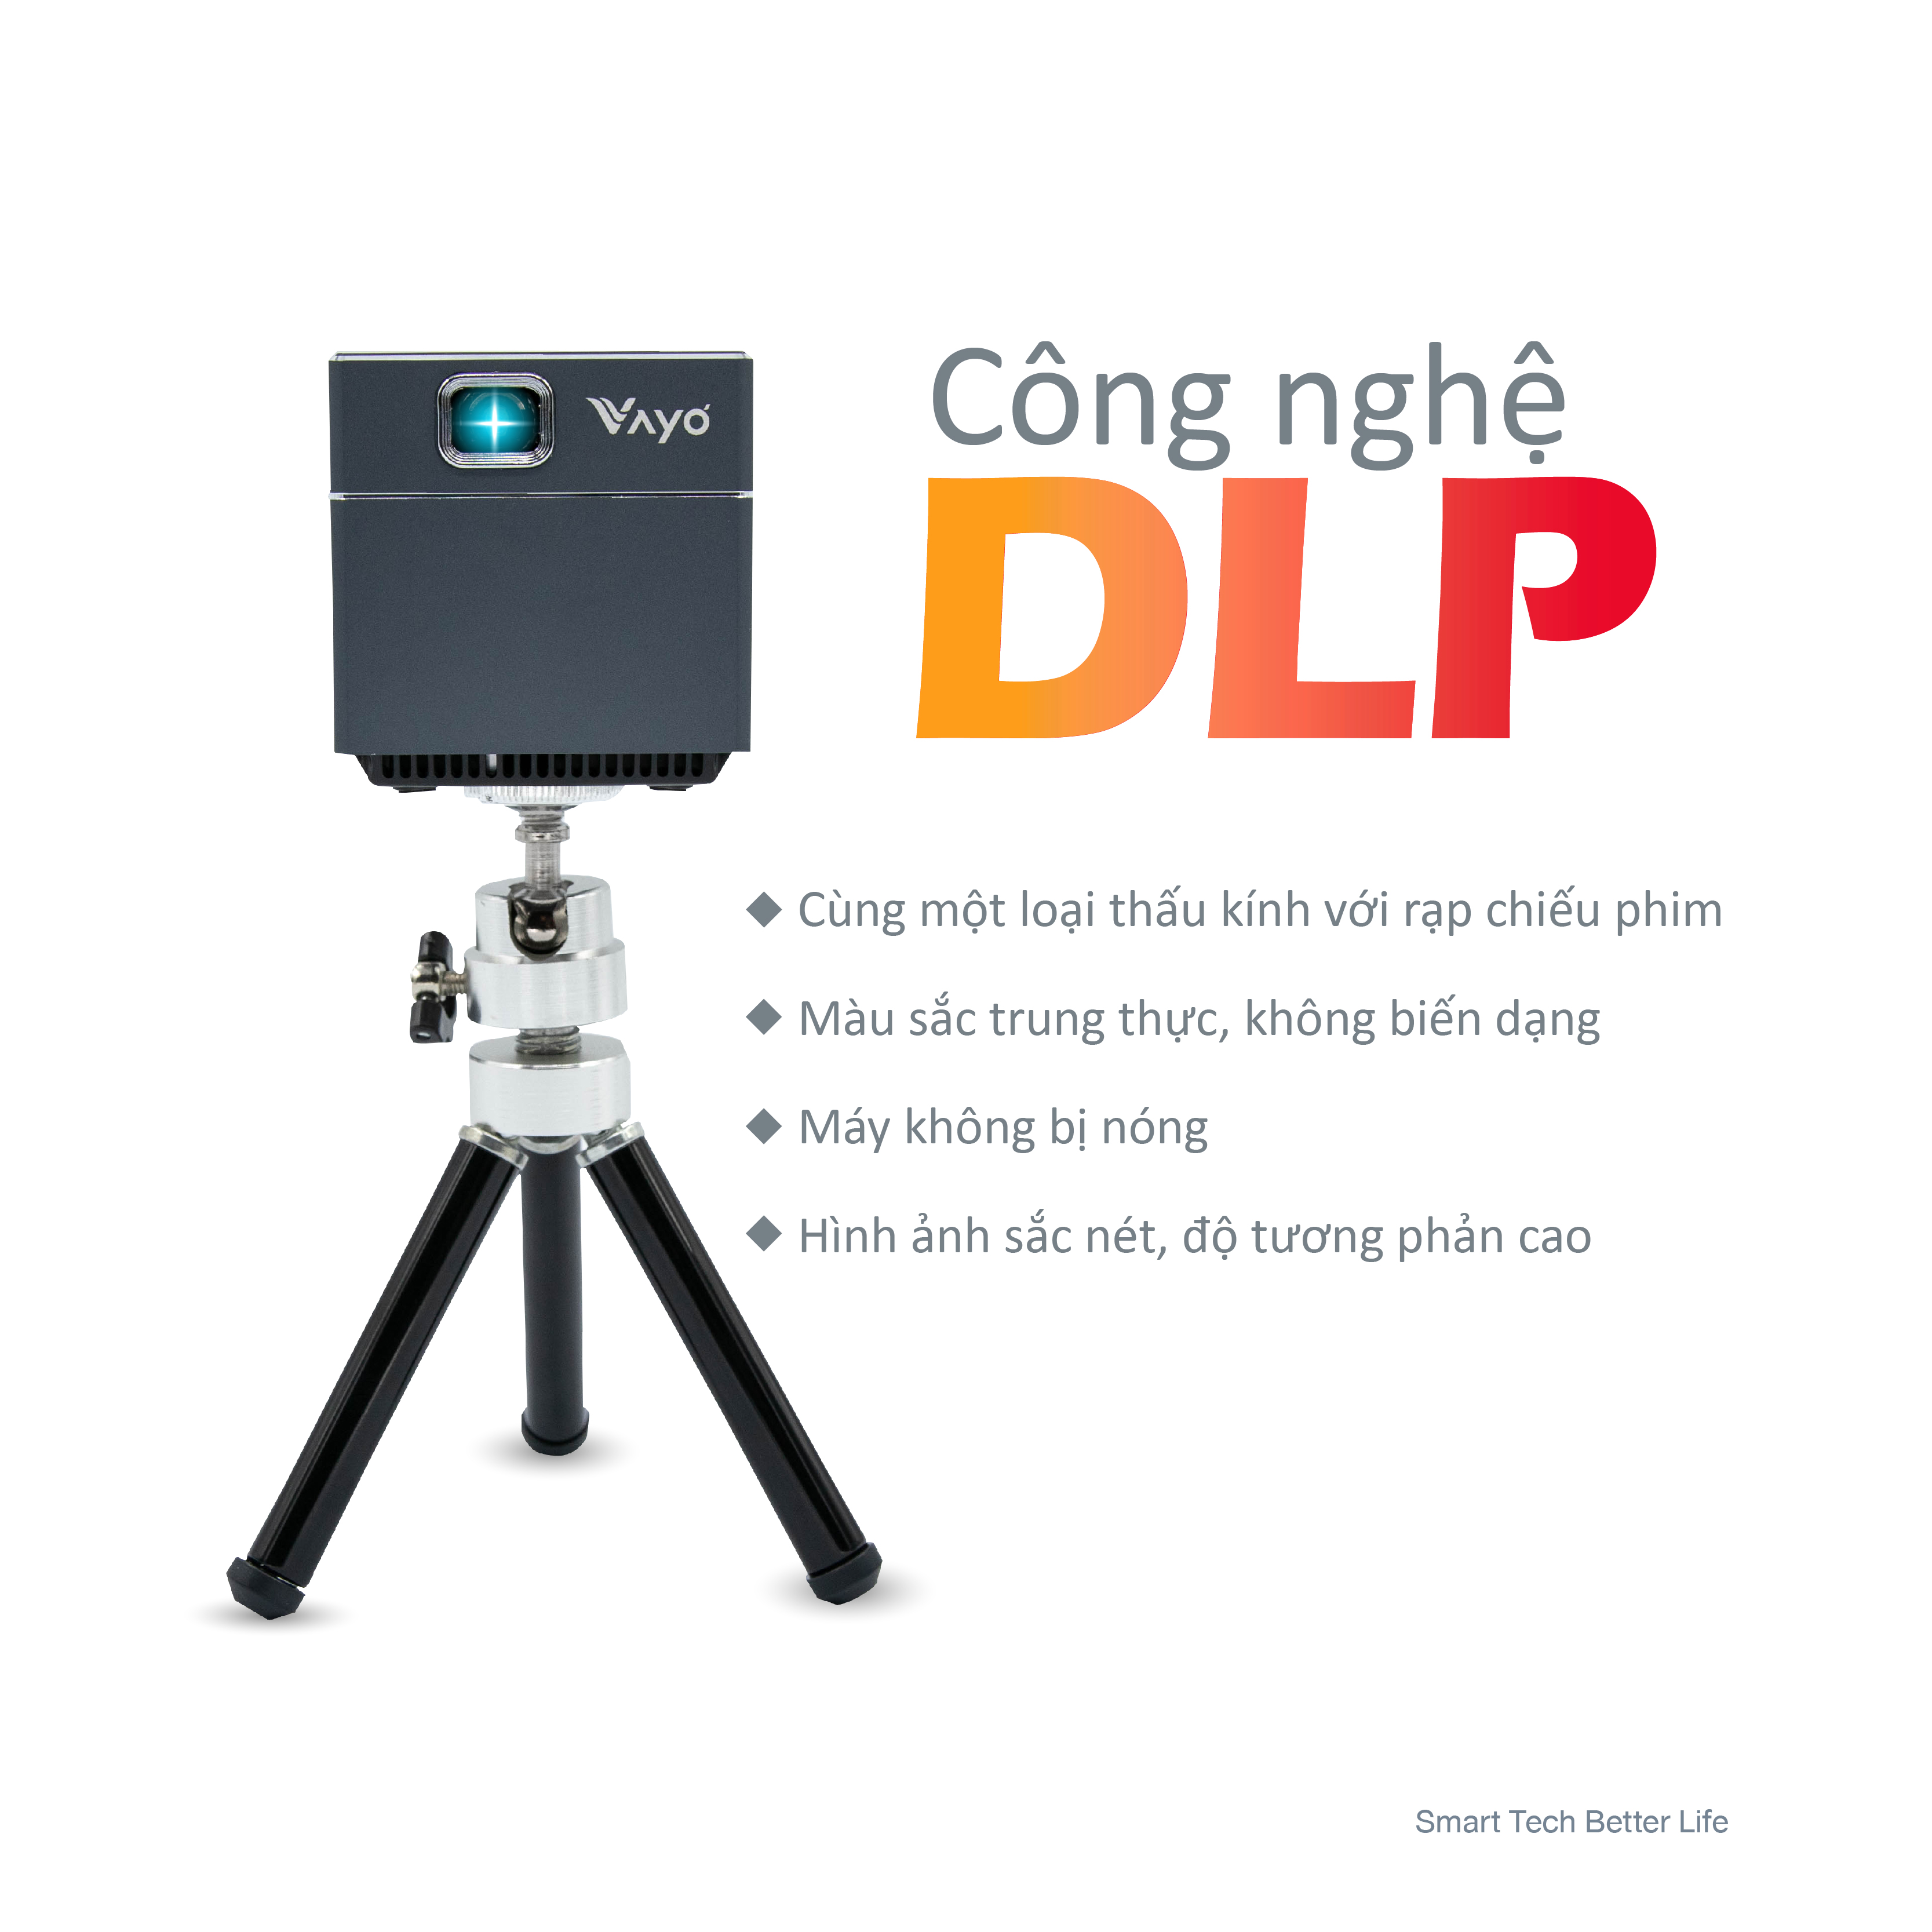 Máy chiếu thông minh mini Vayo - Smart Mini Projector công nghệ DLP kết nối Android, IOS, pin 2 tiếng, có sẵn loa, độ phân giải fullHD sắc nét, hàng chính hãng, bảo hành 12 tháng